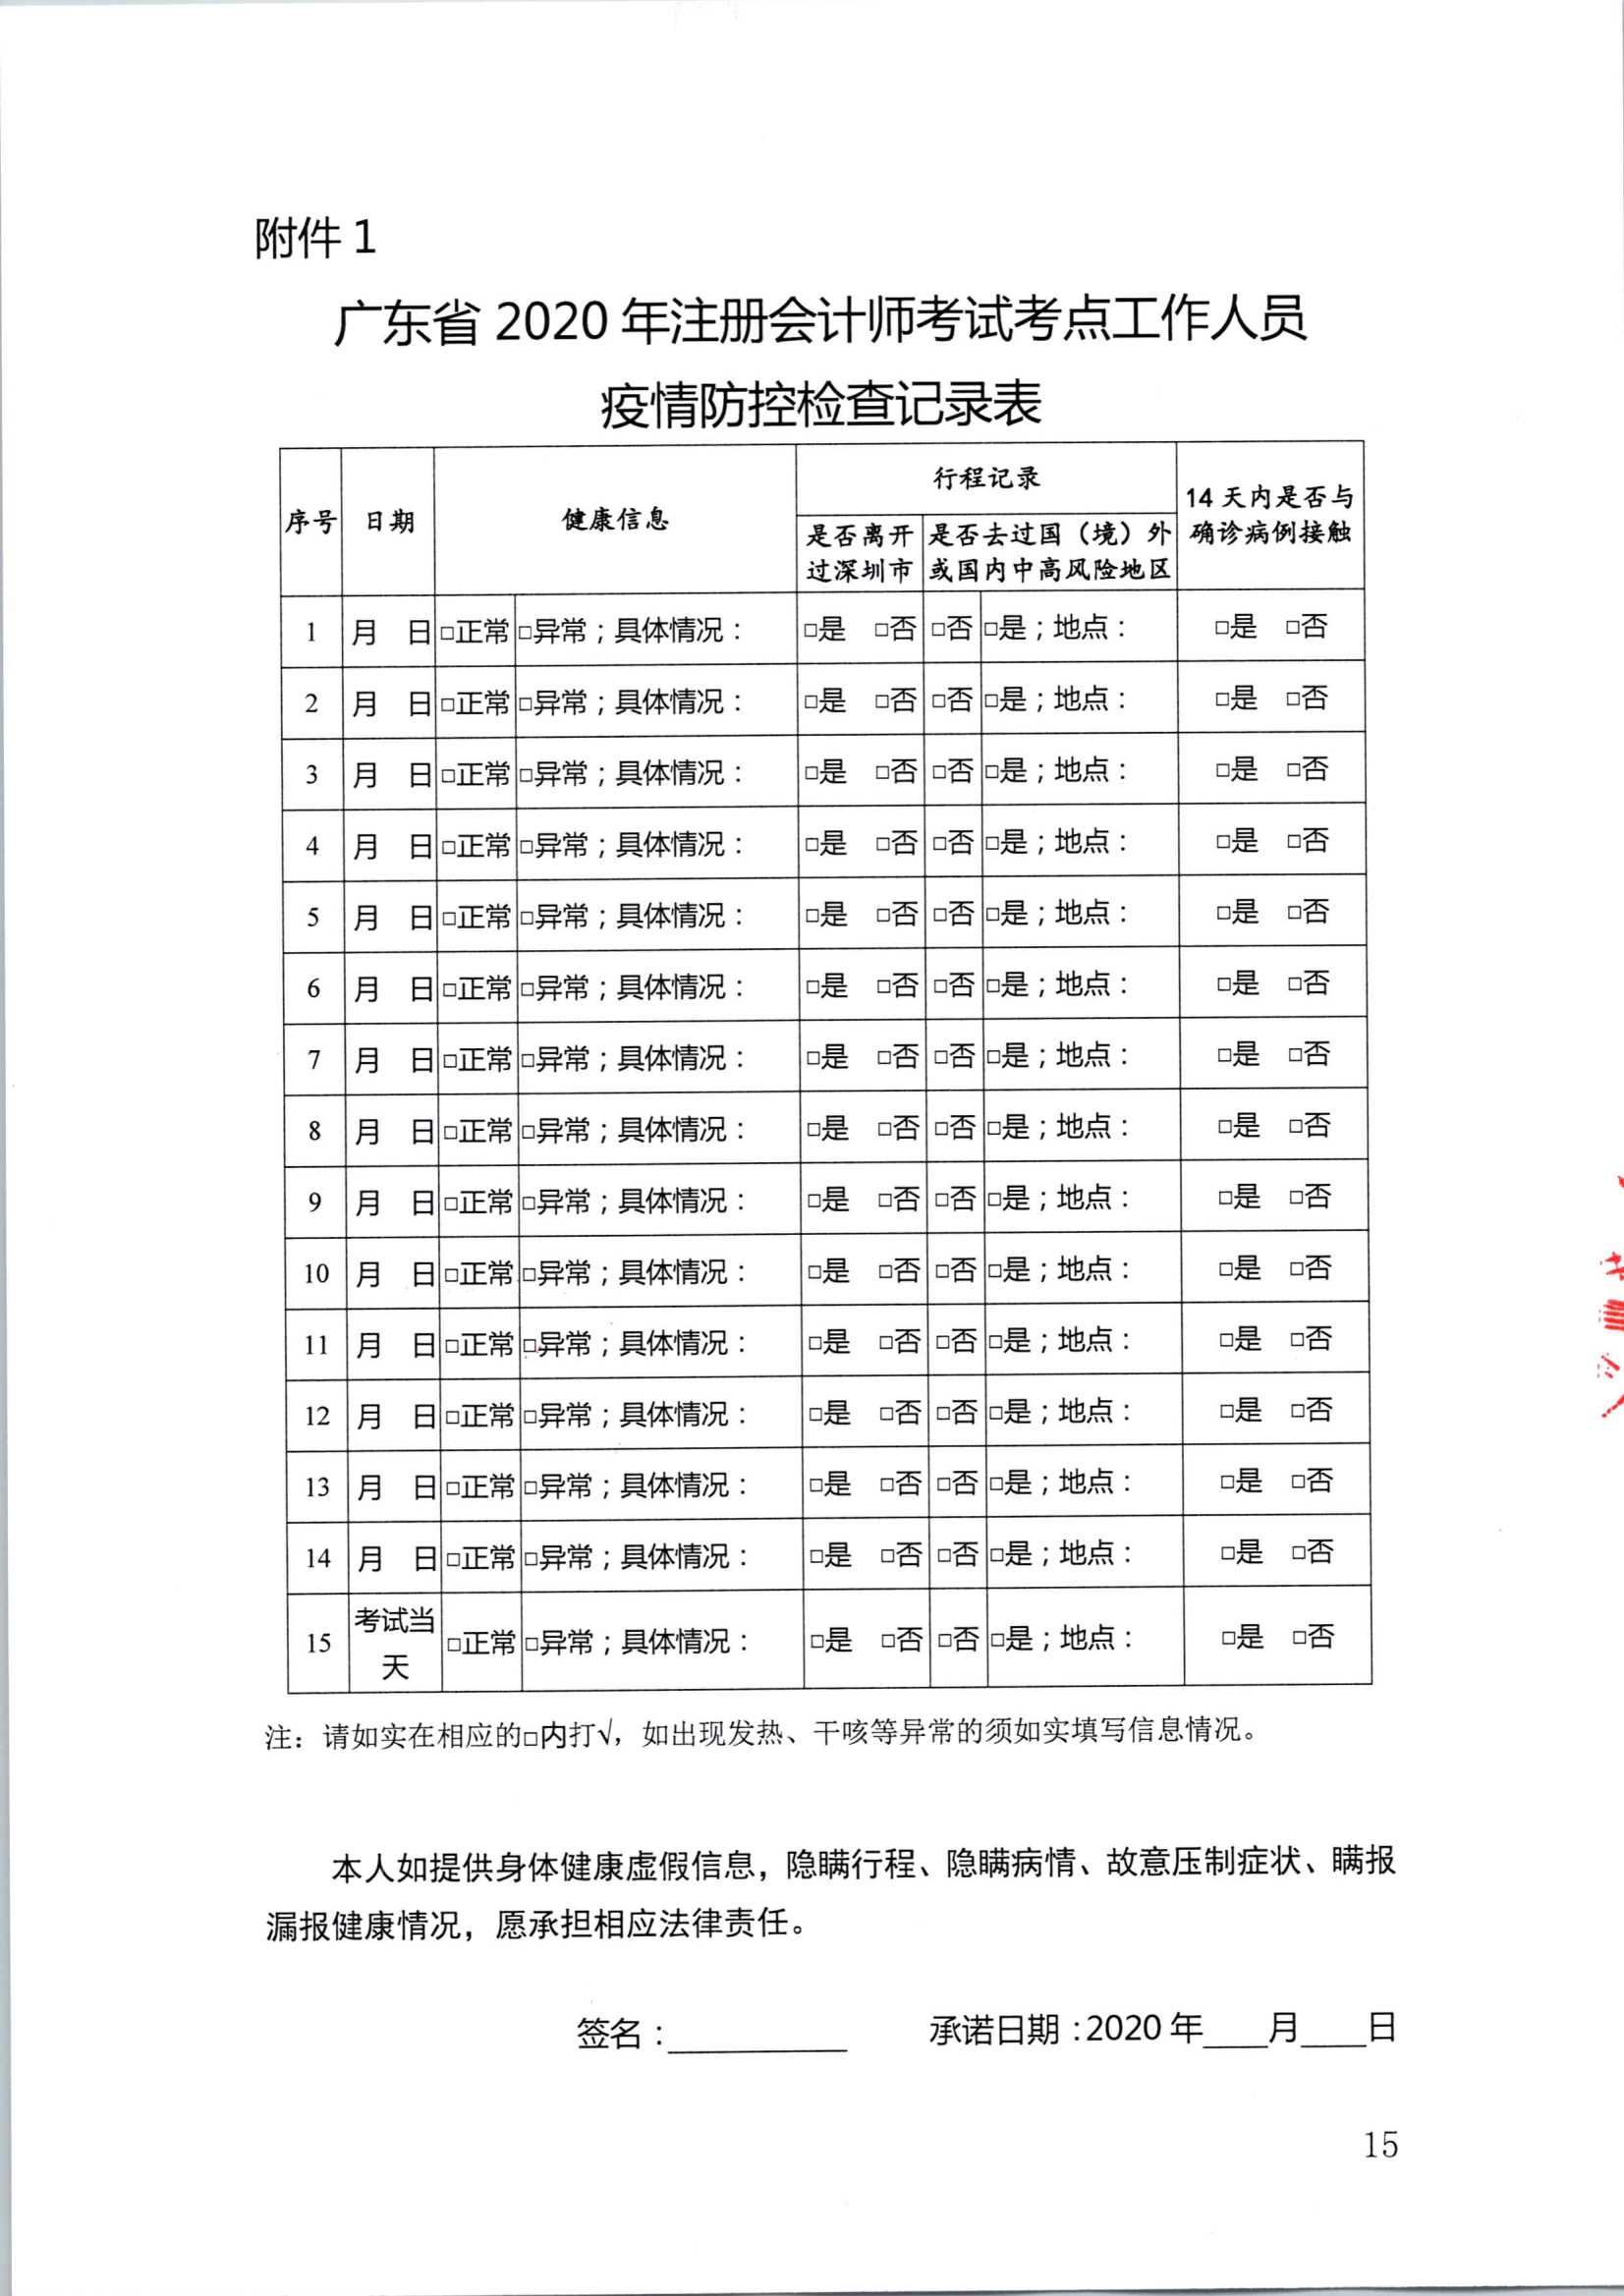 2020注册会计师全国统一考试深圳考区疫情防控工作方案_15.Png